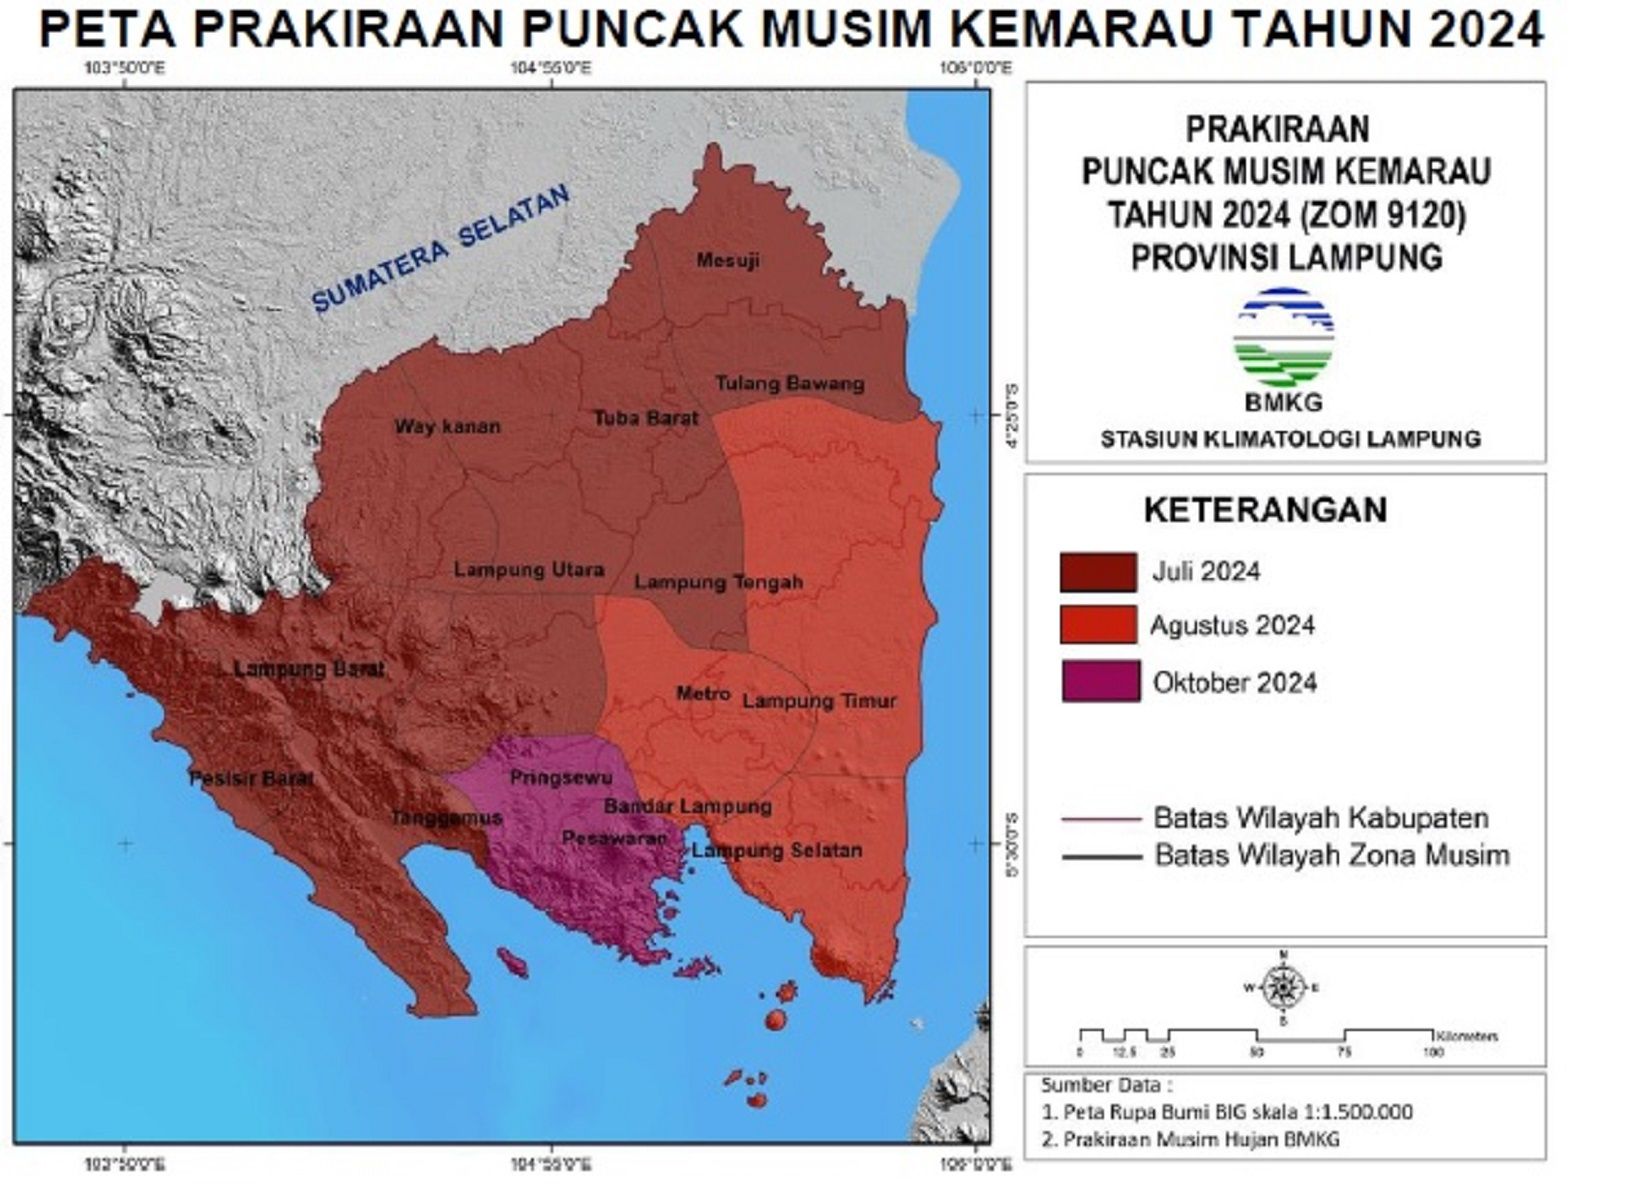 Prakiraan puncakl musim kemarau 2024 di Provinsi Lampung